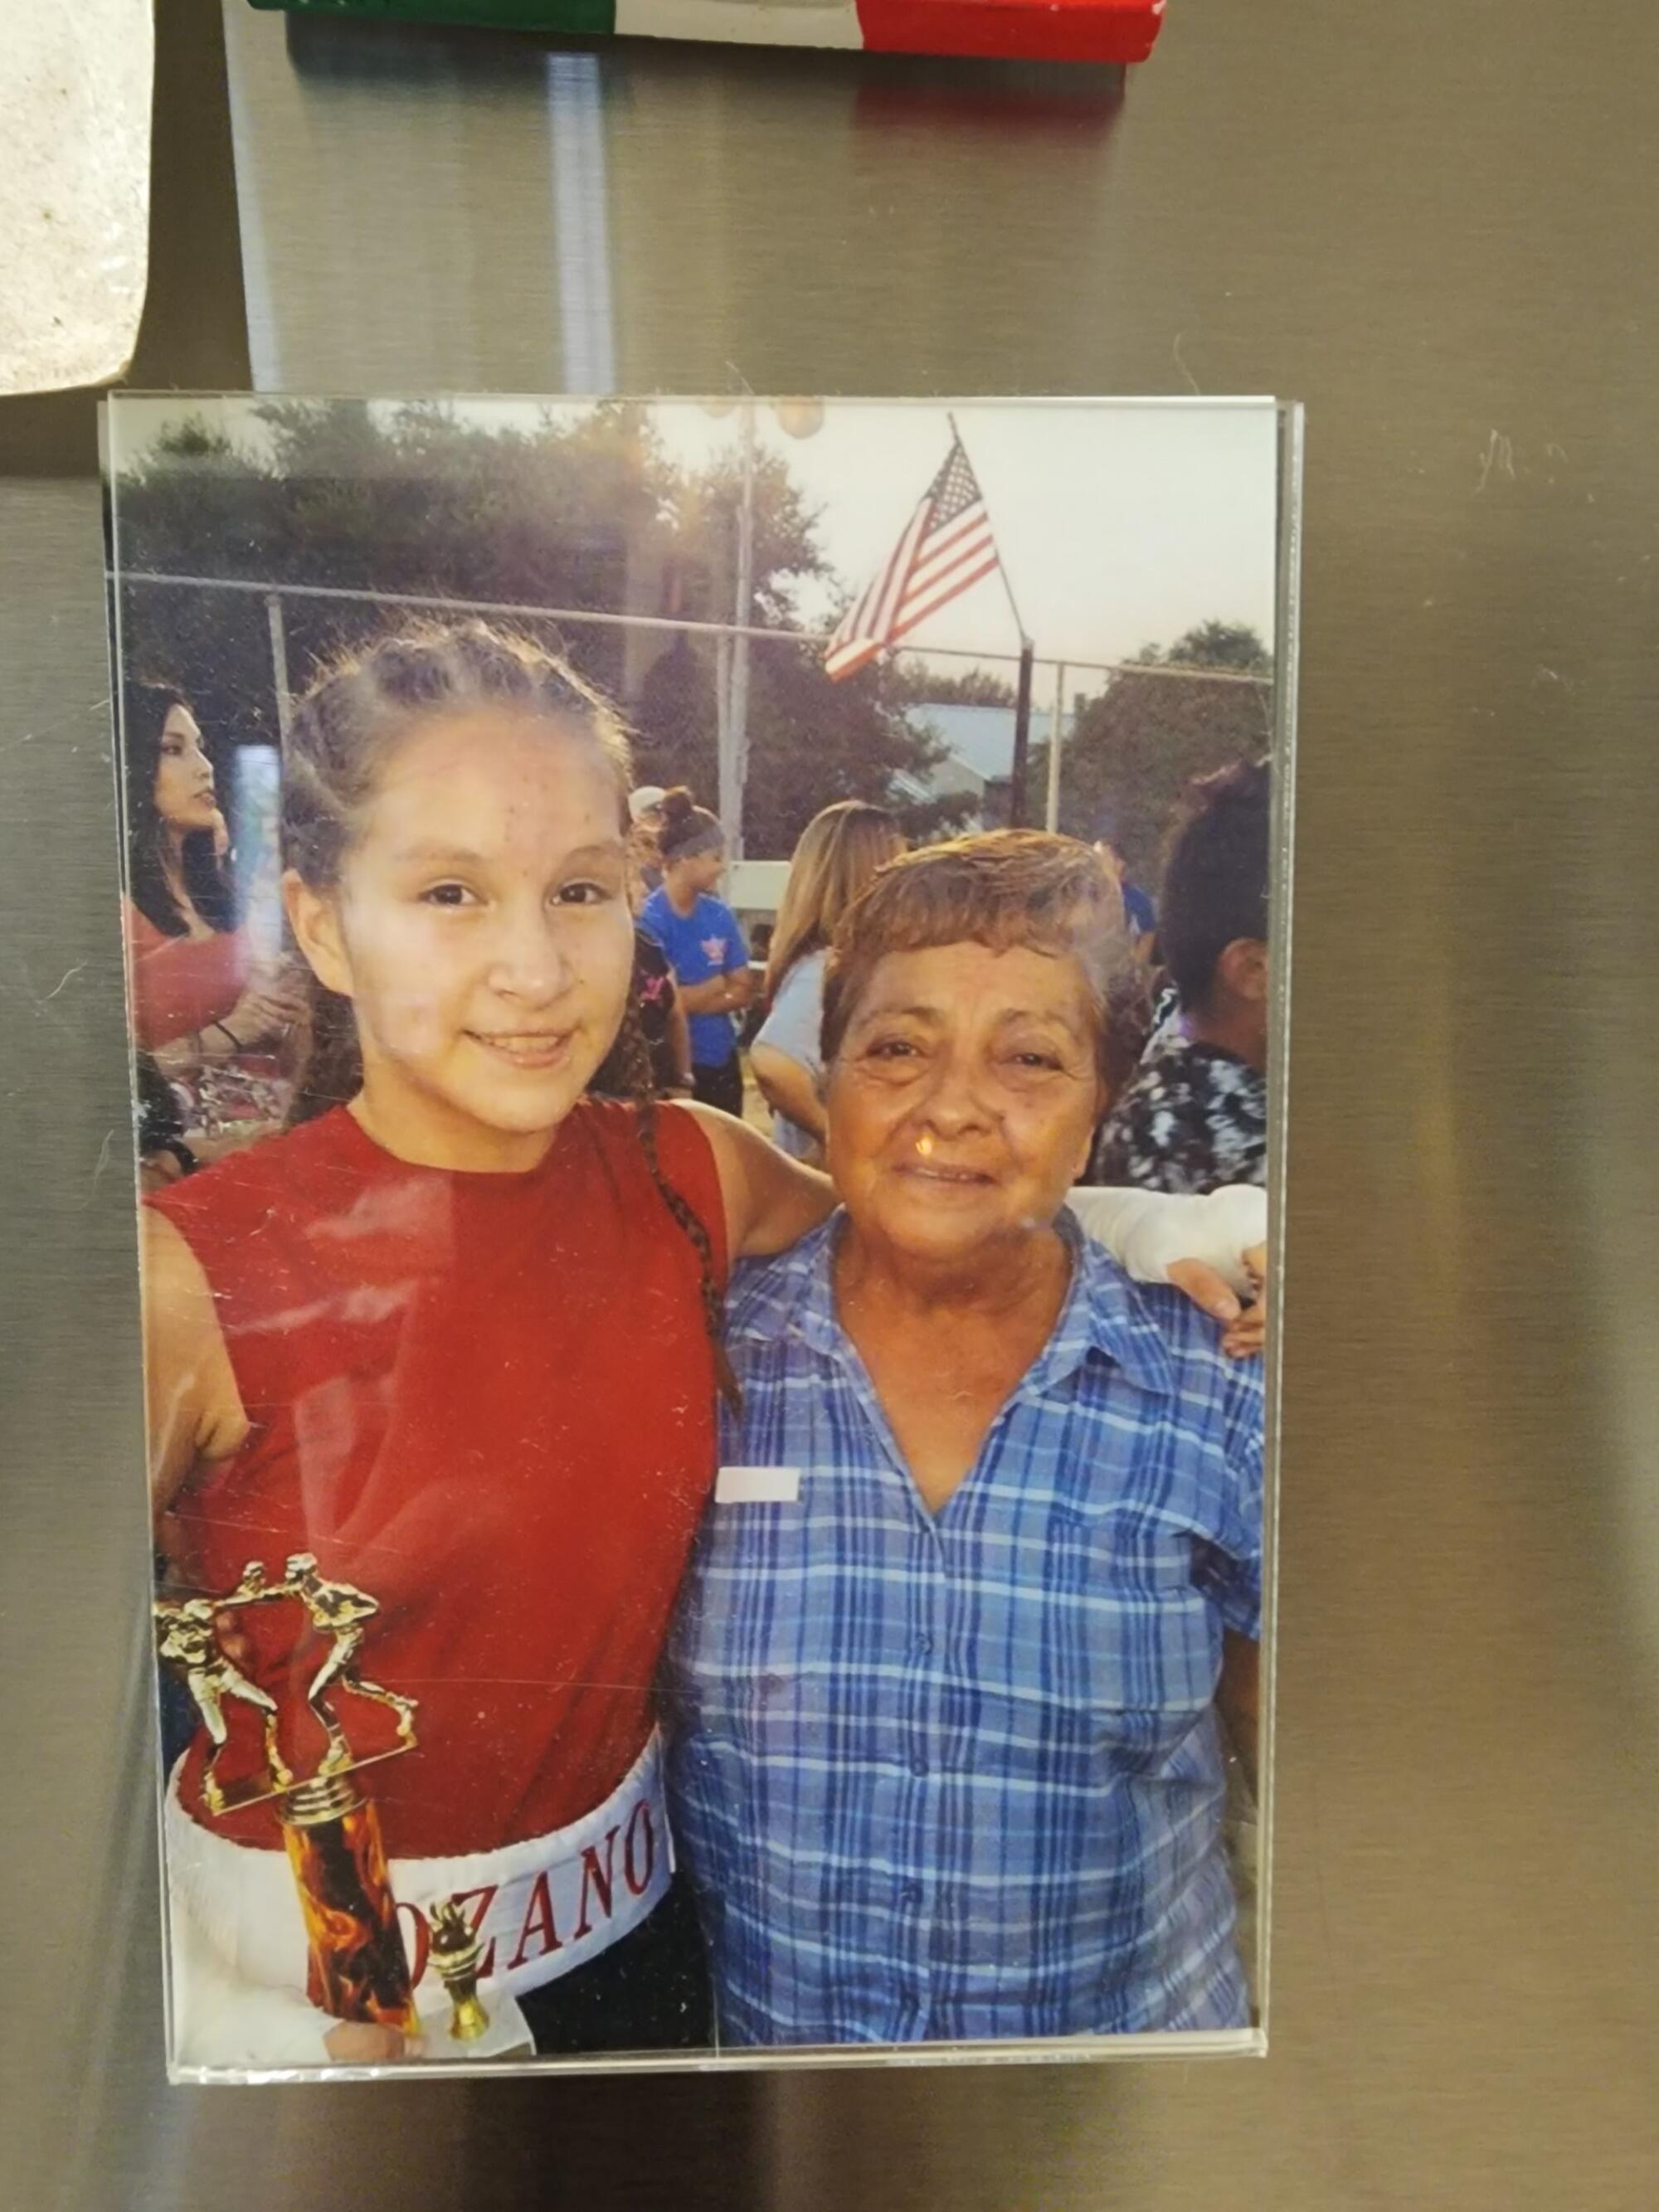 左为詹妮弗·洛扎诺 (Jennifer Lozano)，站在她祖母弗吉尼亚·桑切斯·奎瓦斯 (Virginia Sánchez Cuevas) 旁边，后者于 2017 年在一次枪击事件中丧生。